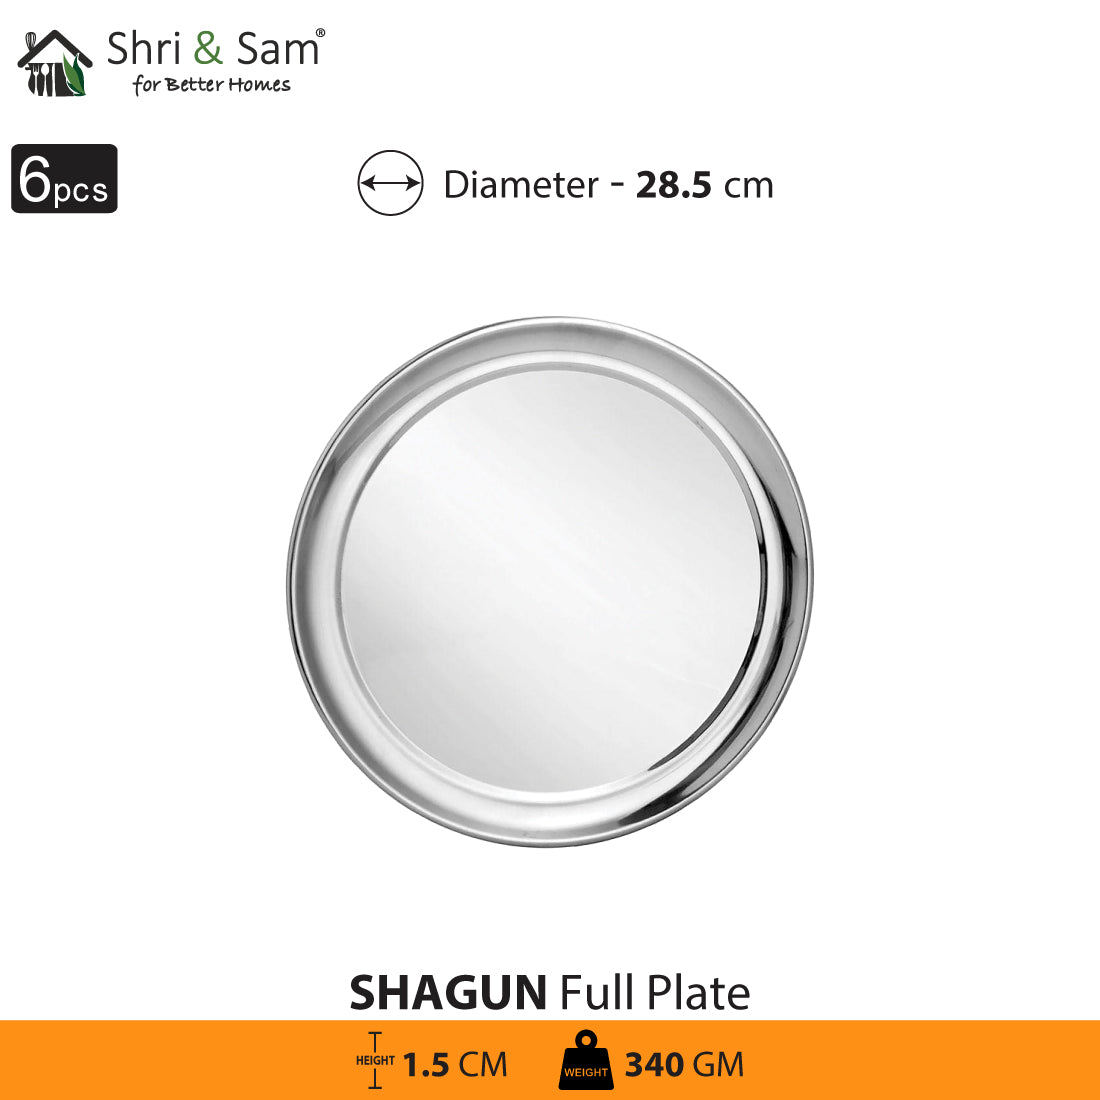 Stainless Steel 6 PCS Full Plate Shagun